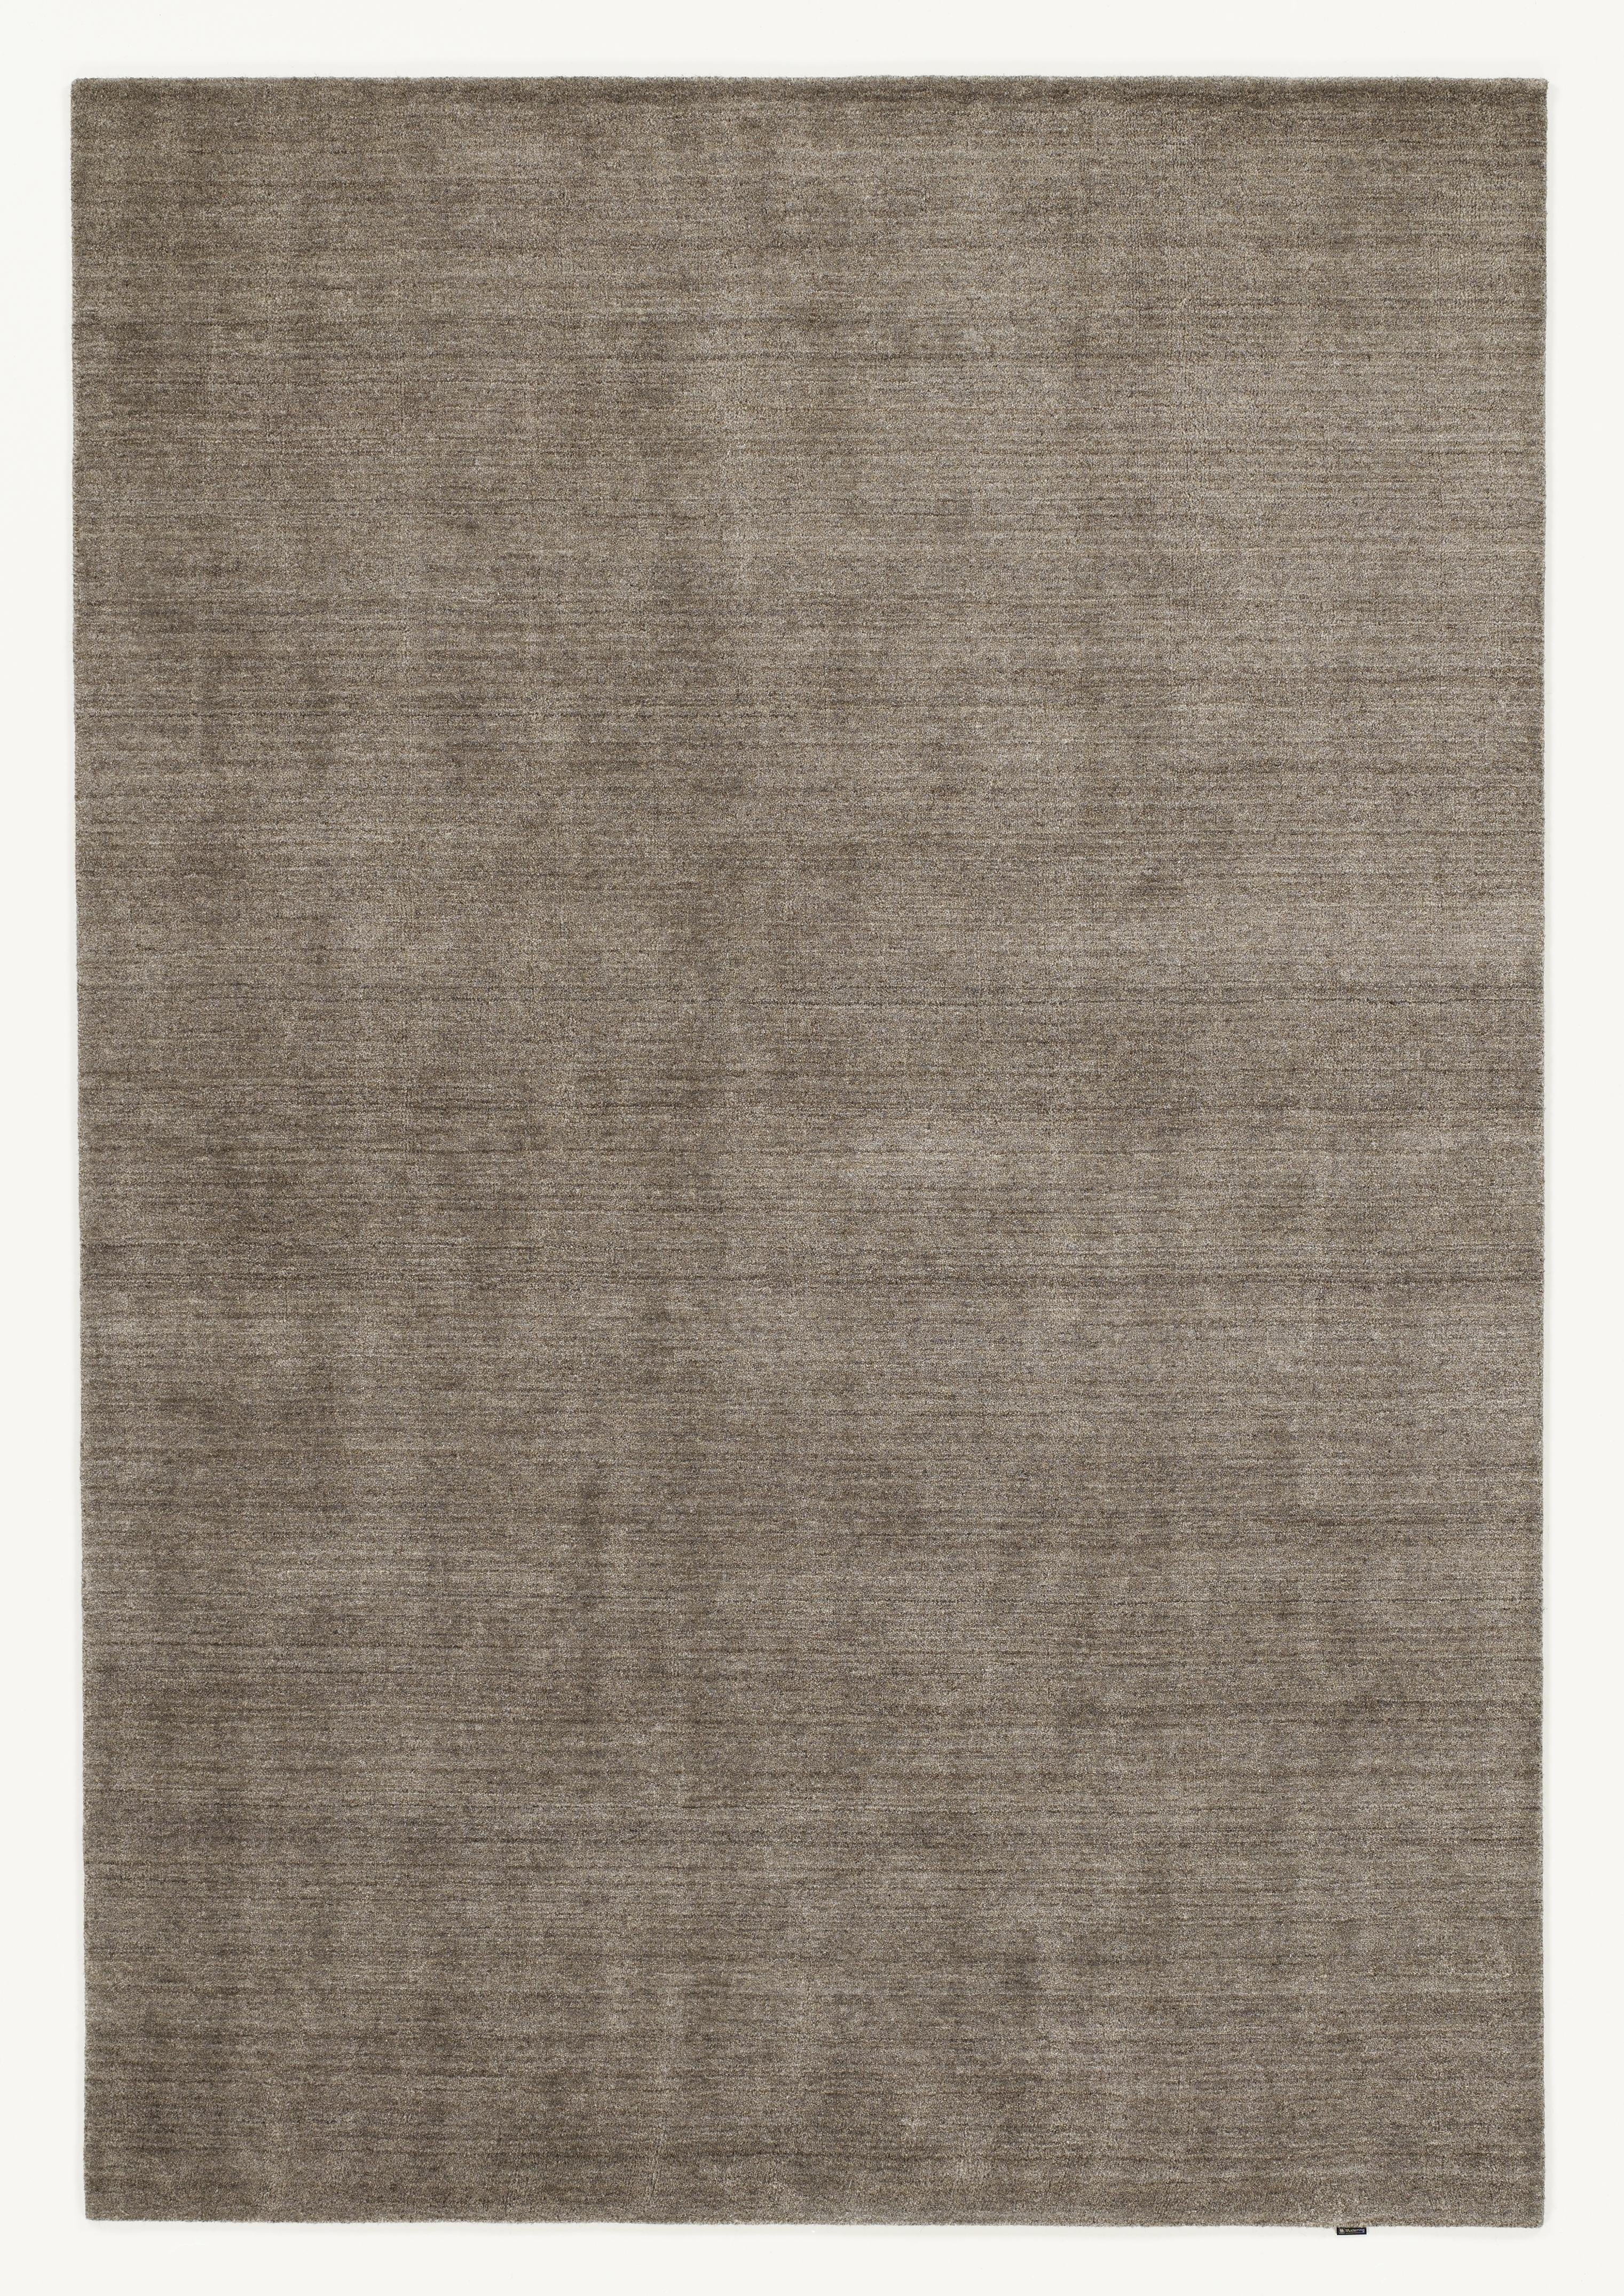 ORIENTTEPPICH  70/140 cm  Braun   - Braun, KONVENTIONELL, Textil (70/140cm) - Musterring